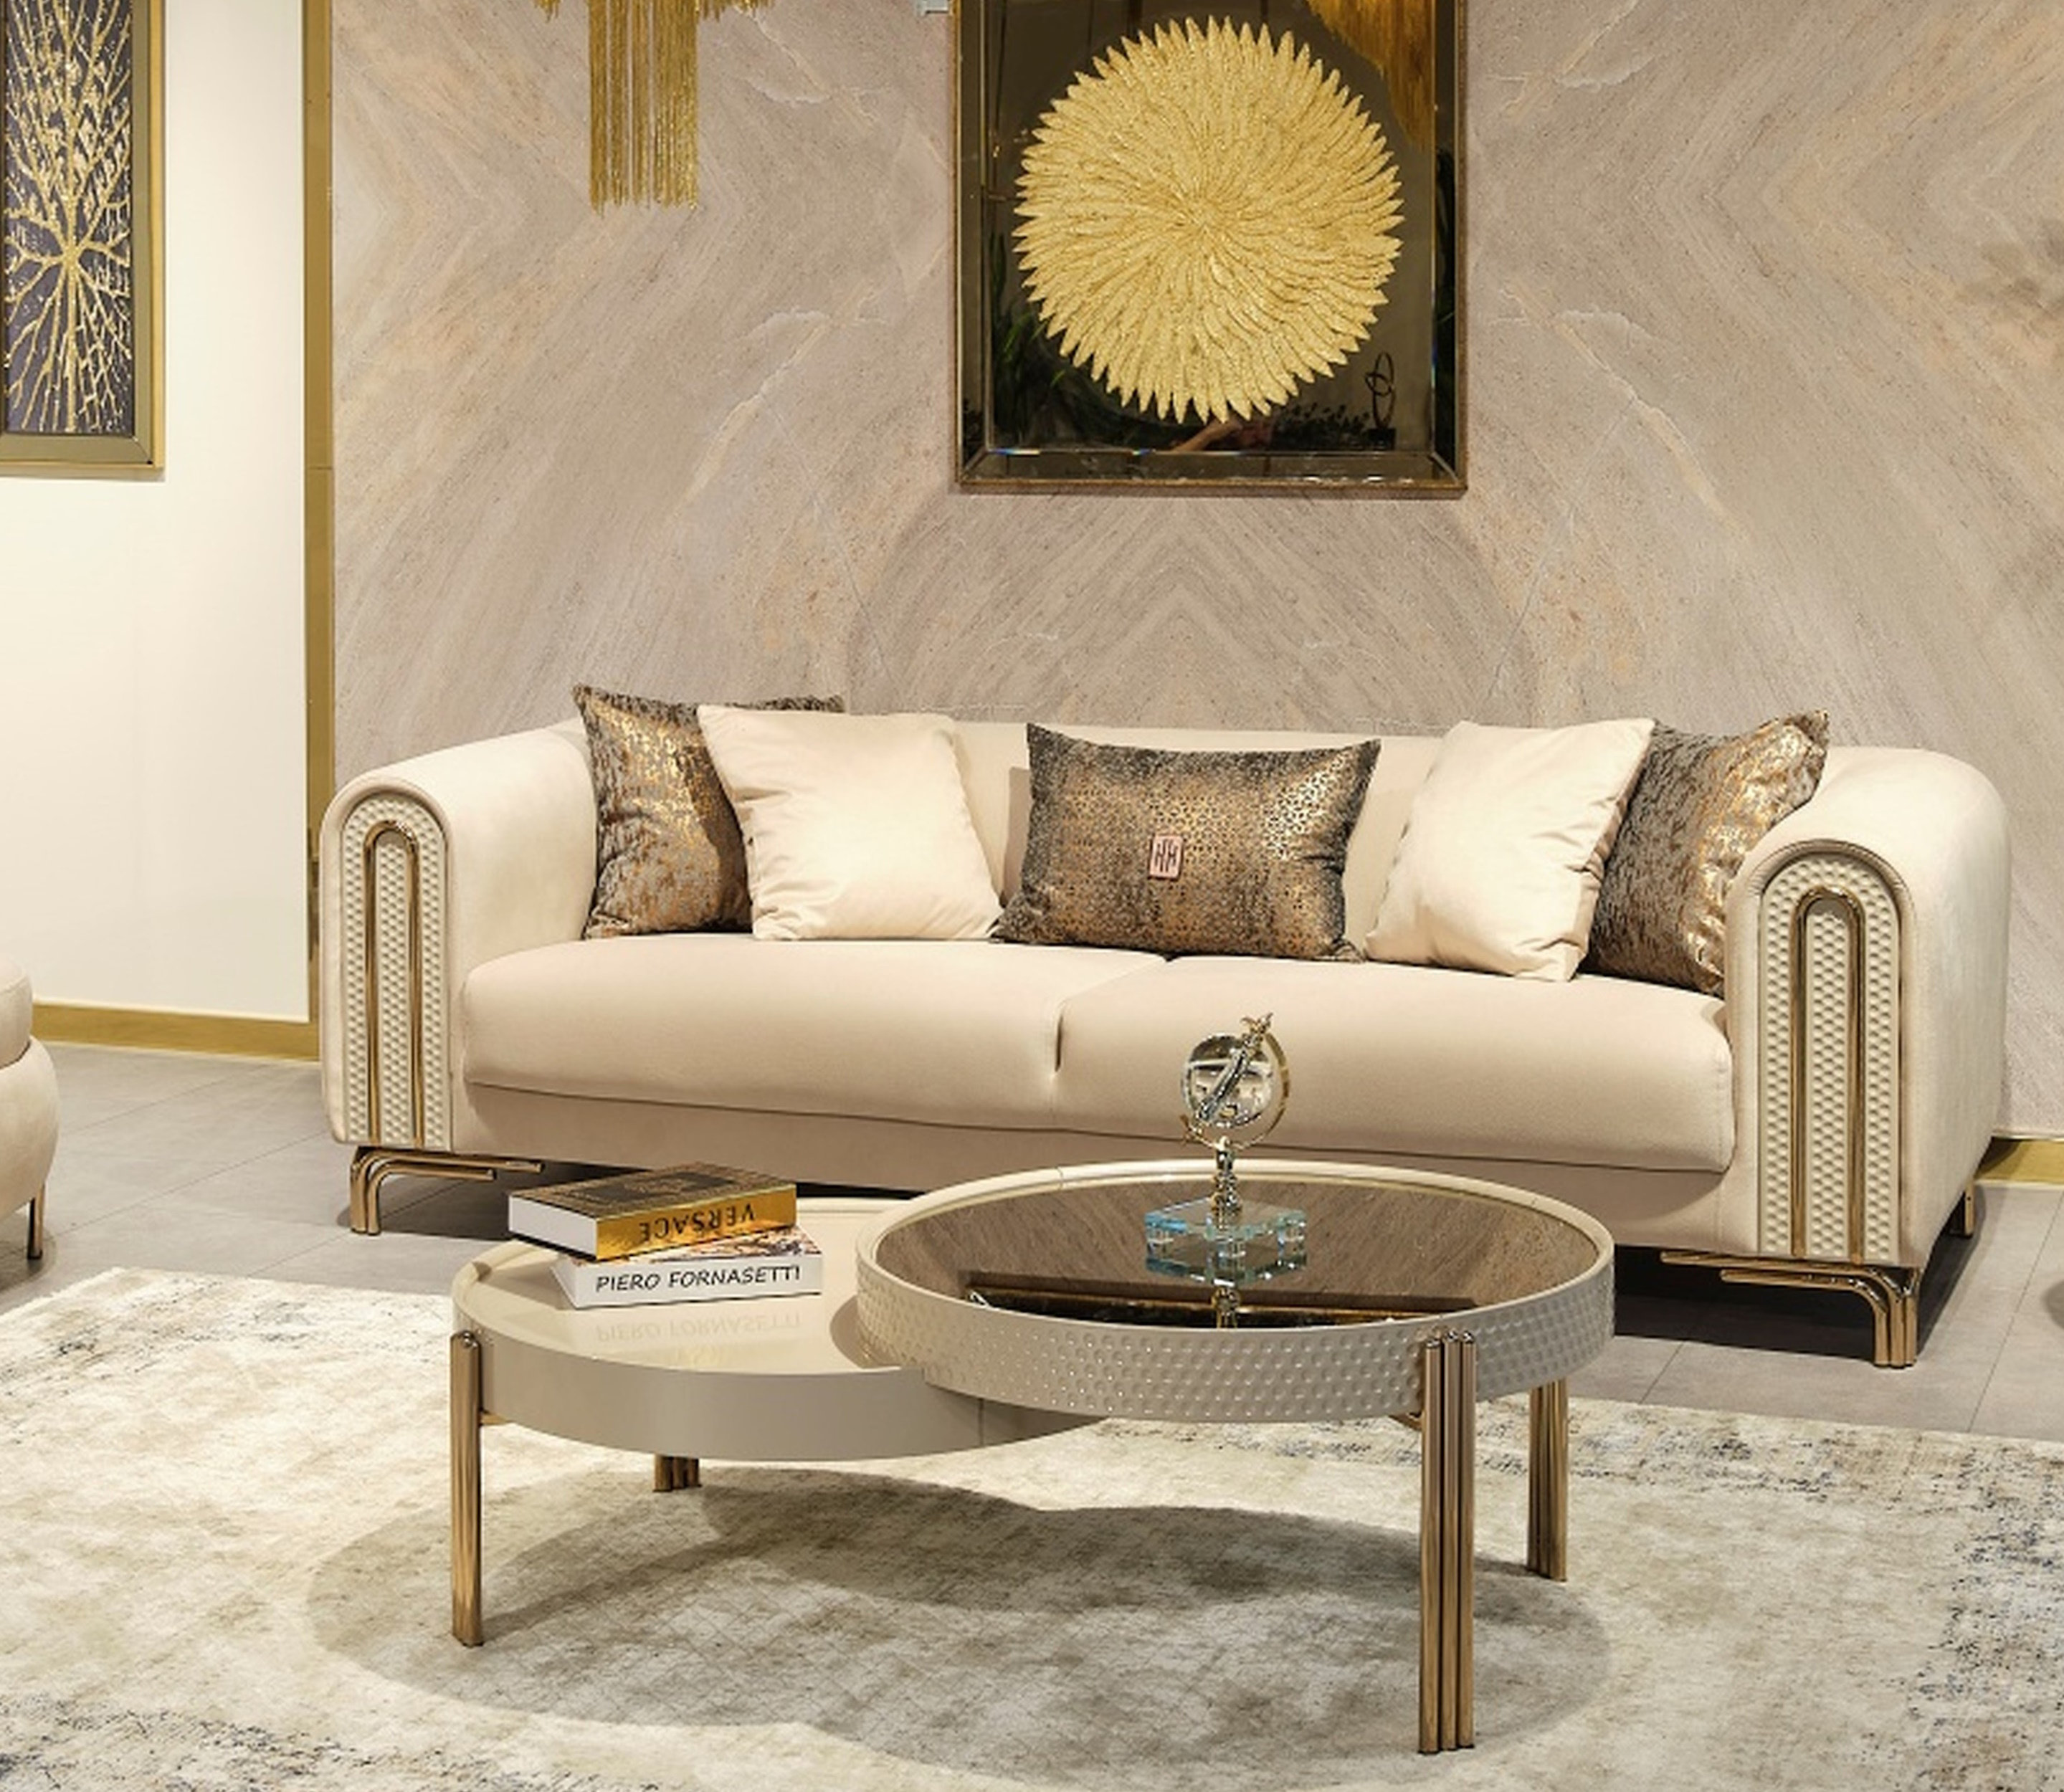 4PC Metal Furniture Legs, Modern Style Coffee Table Sofa Feet